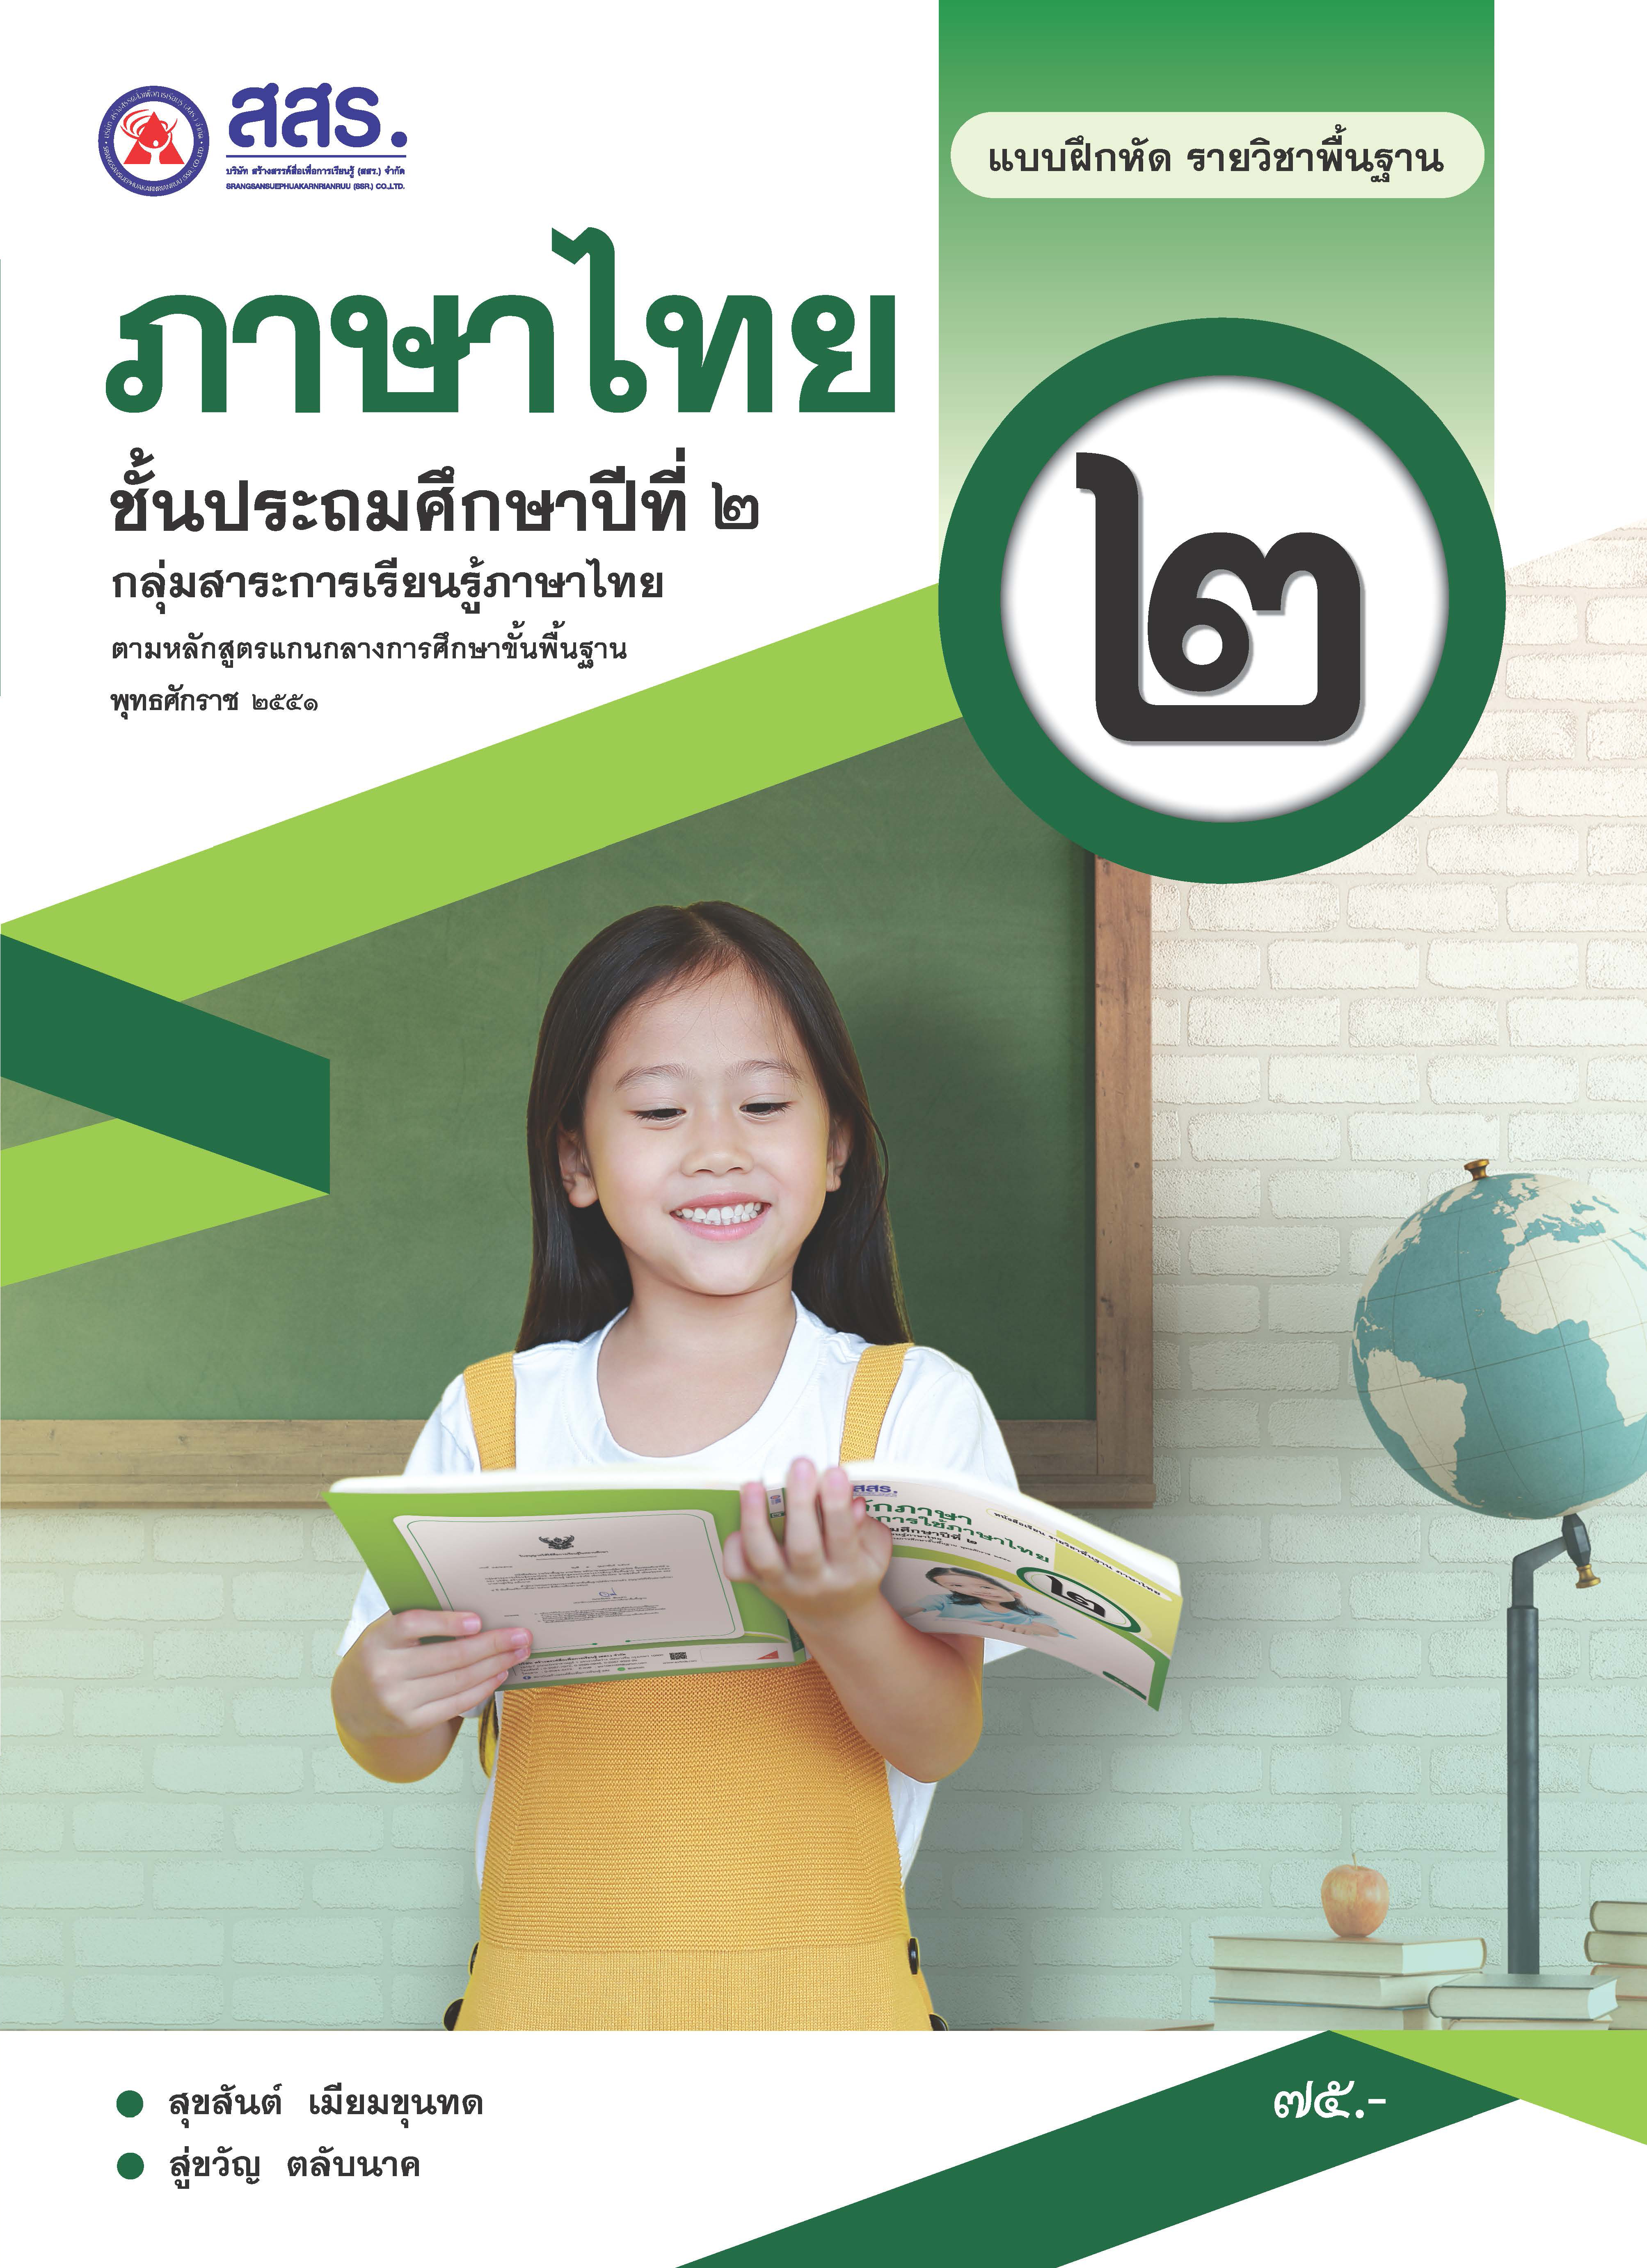 แบบฝึกหัดรายวิชาพื้นฐาน ภาษาไทย ชั้นประถมศึกษาปีที่ 2 (ฉบับใบอนุญาตฯ)